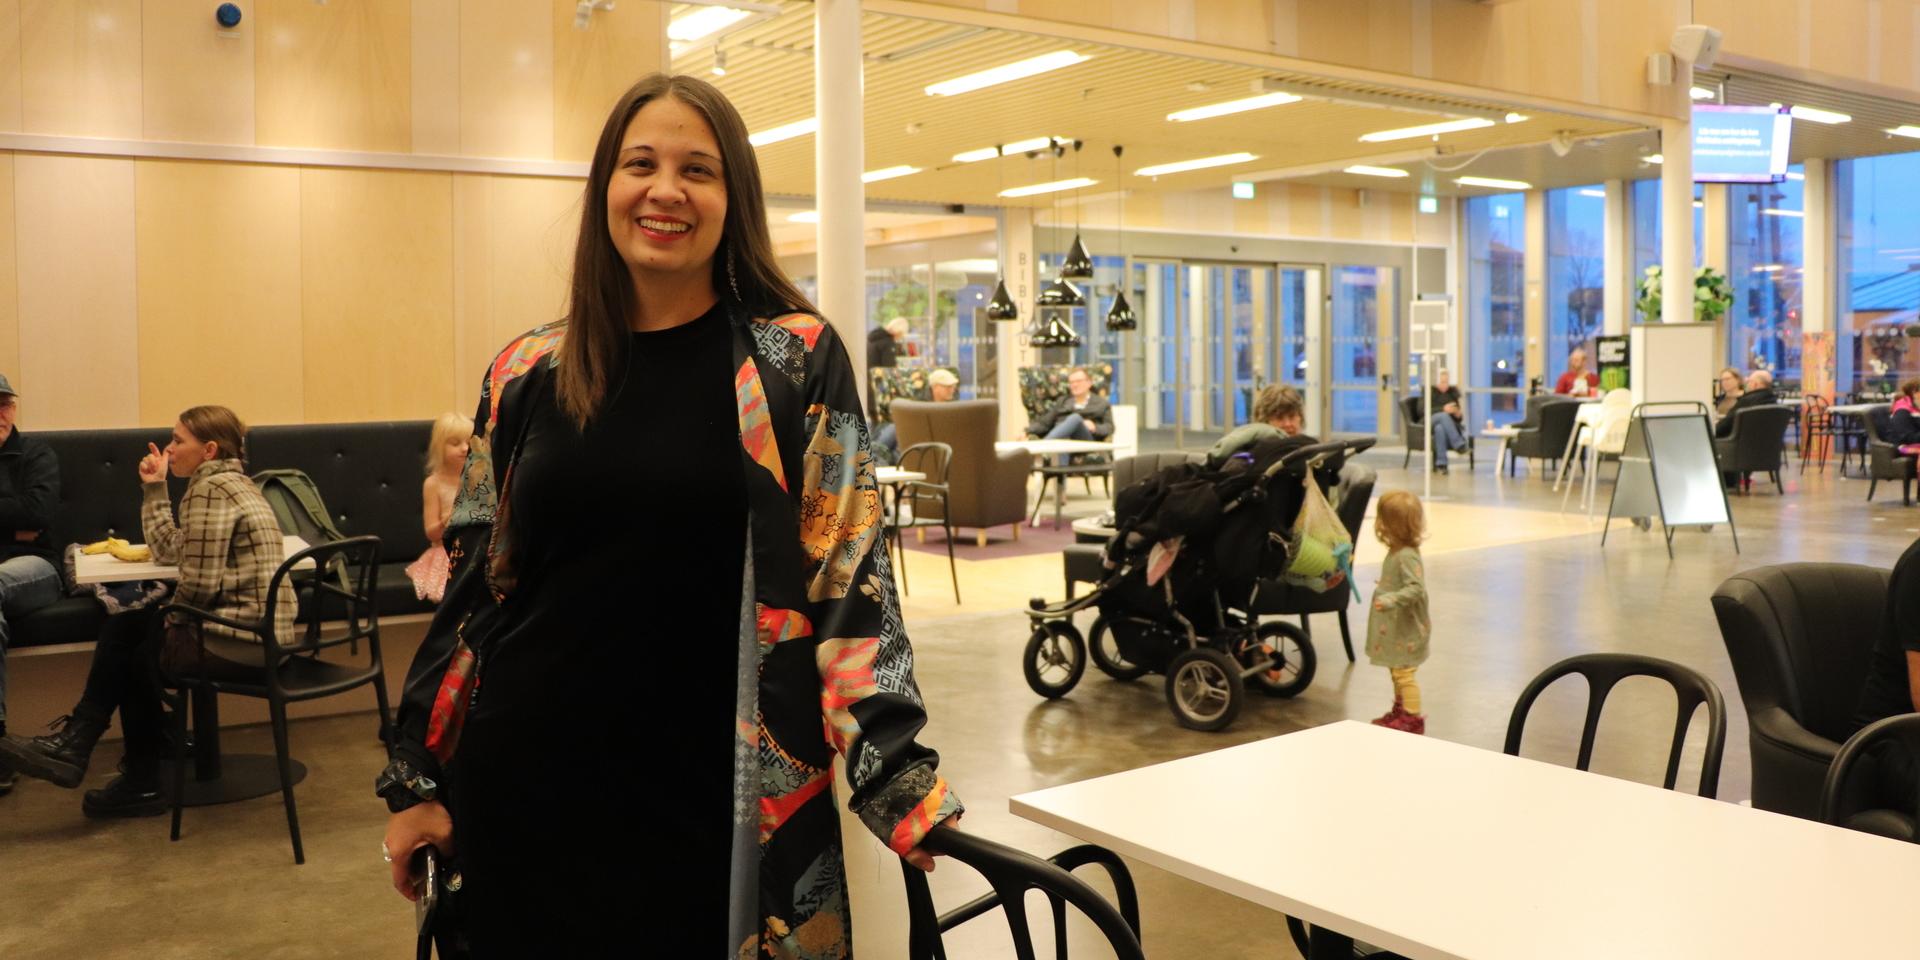 Kulturchefen Matilda Skön är under invigningen förväntansfull över hur kulturnatten kommer bli. 